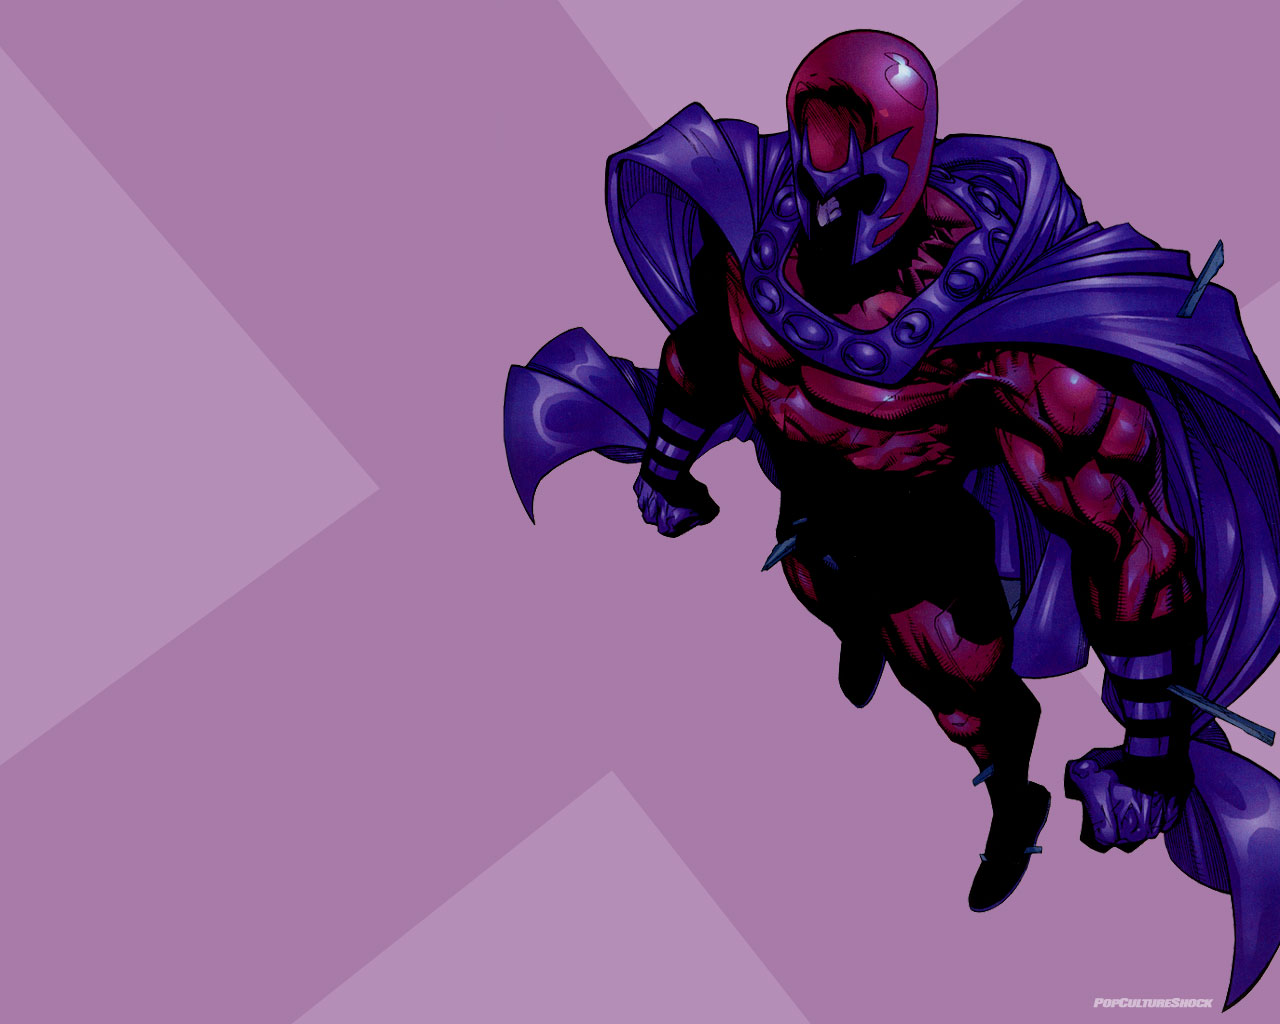 Download X Men Magneto Wallpaper 2560x1440 | Wallpoper #278670